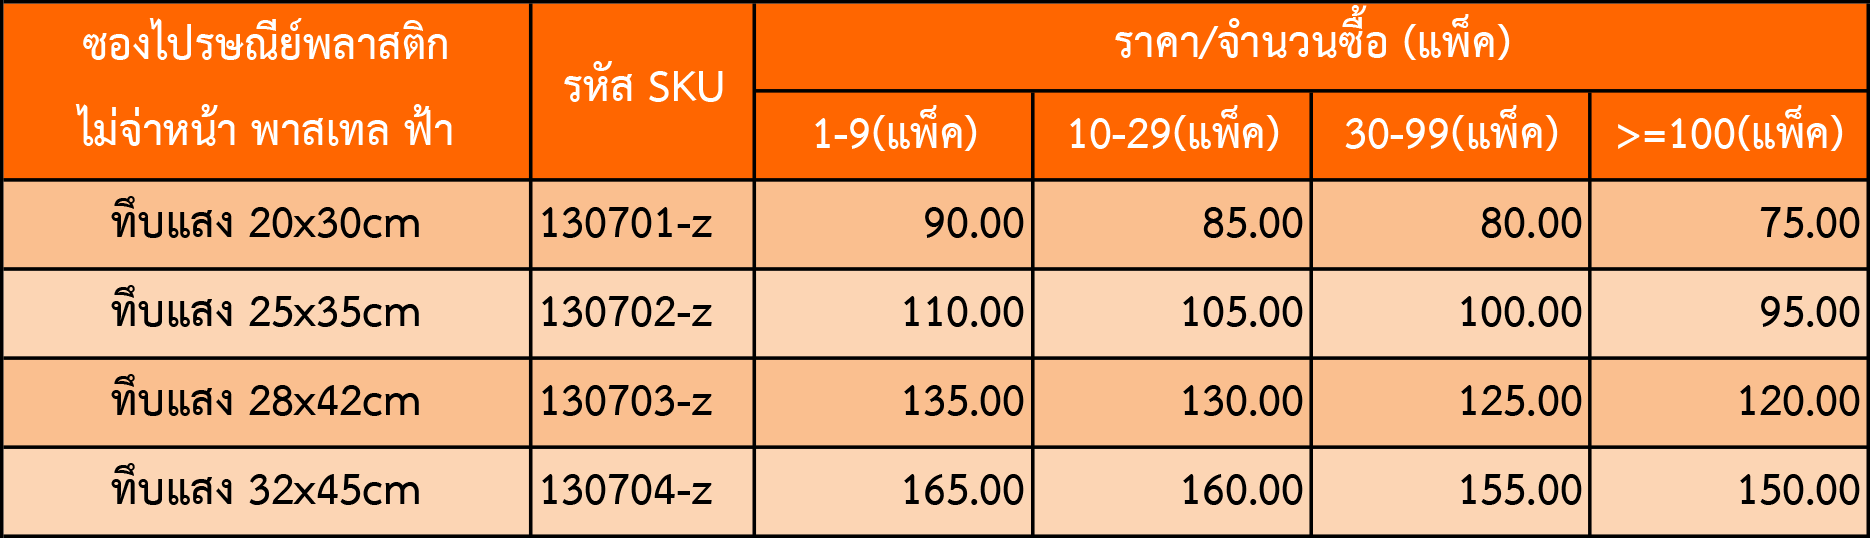 bv price table z100194 1 4